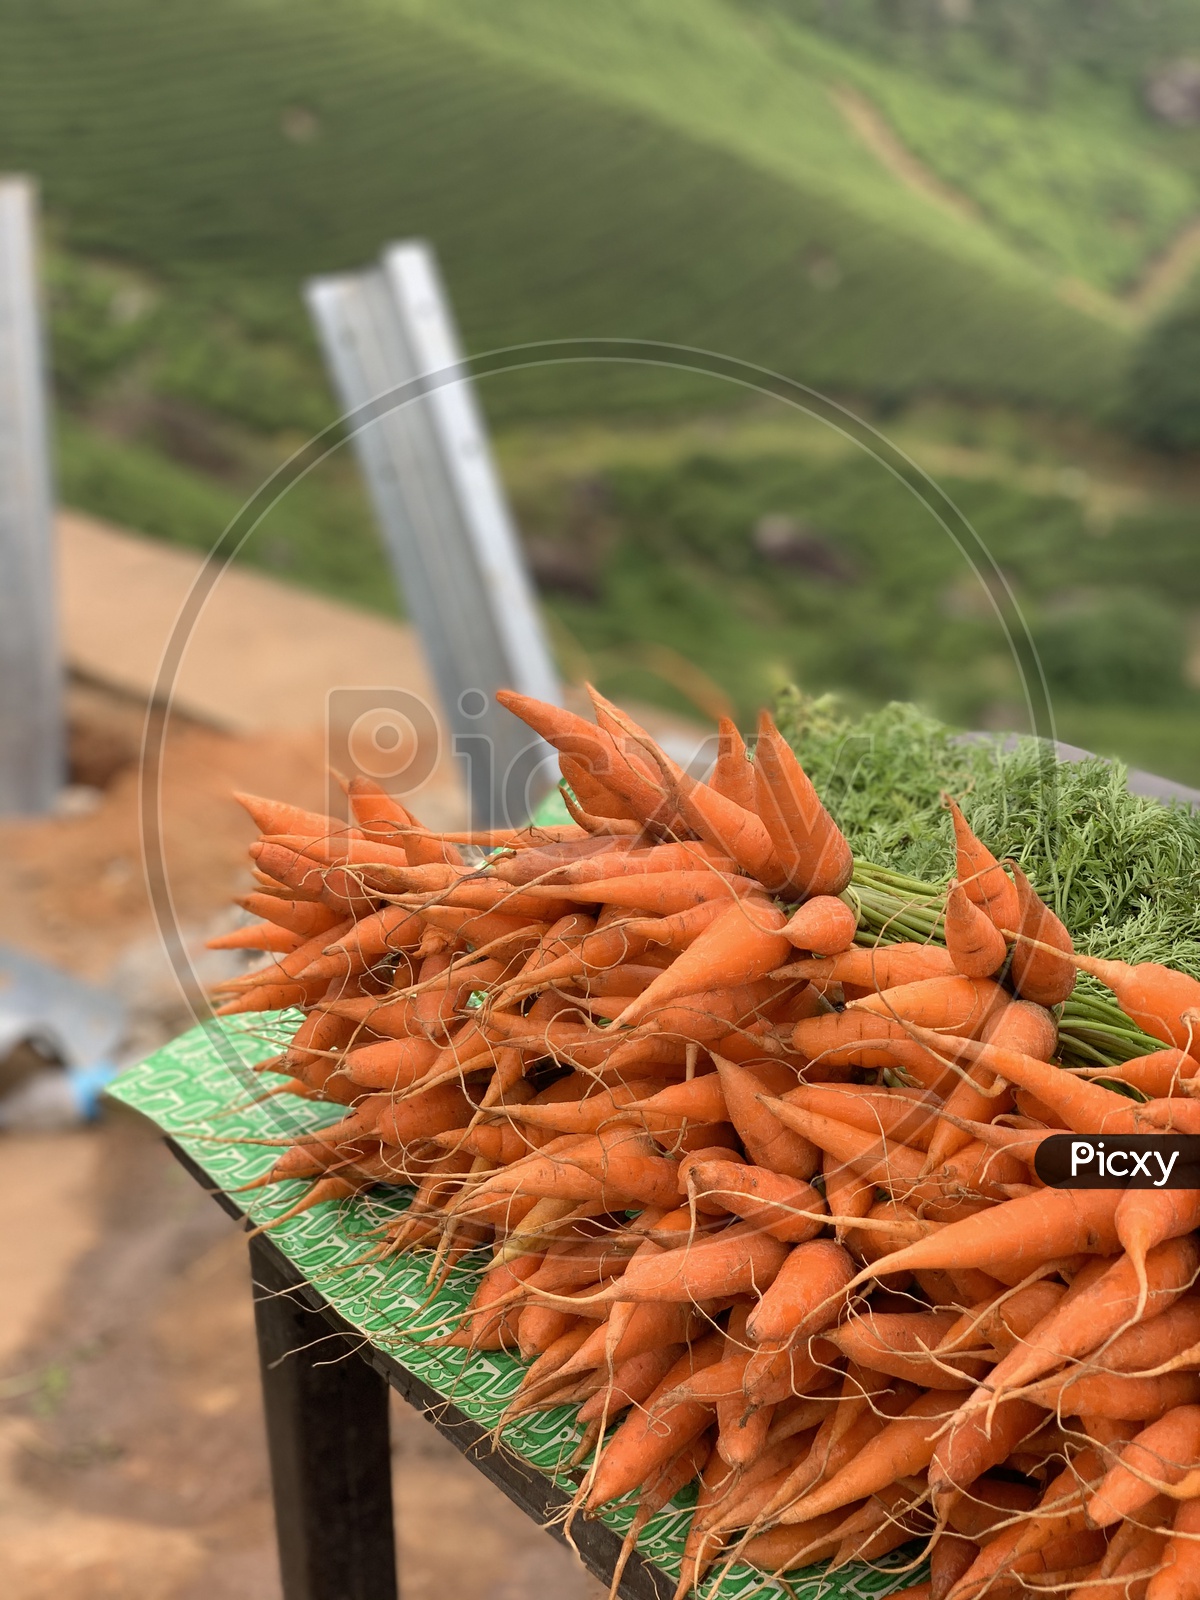 Farm fresh carrot